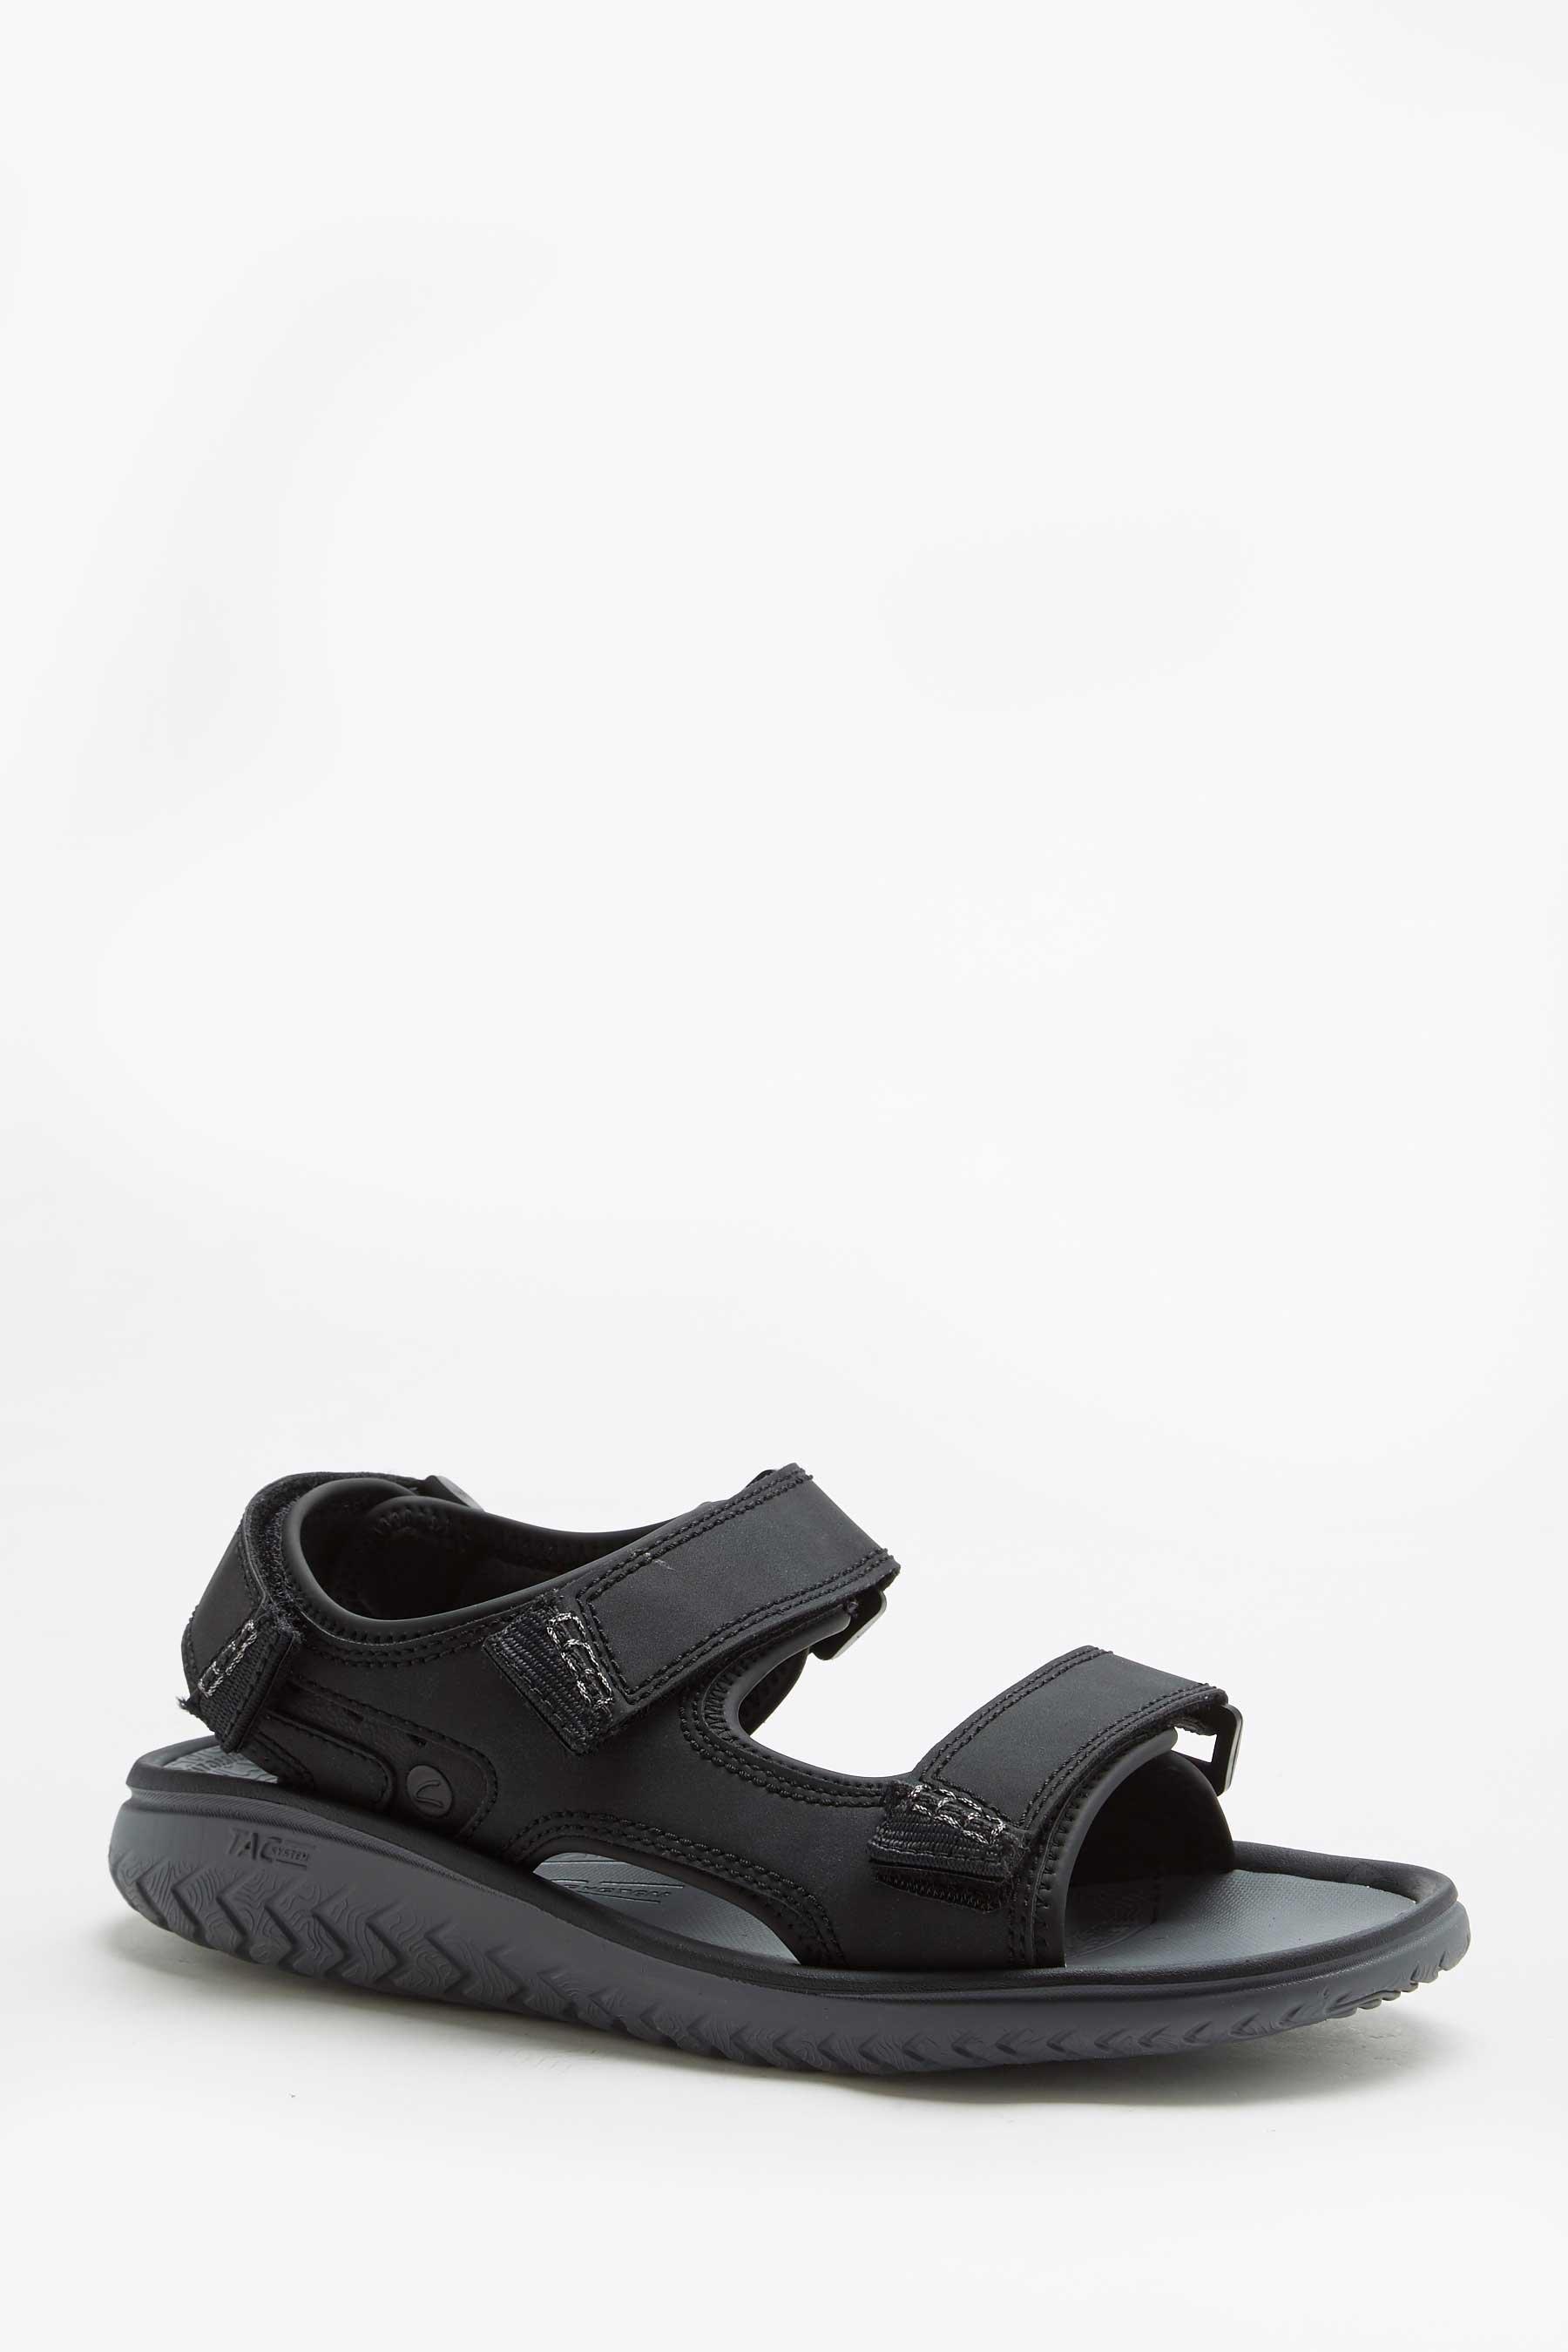 clarks welsey black bay sandals - mens - size: 7